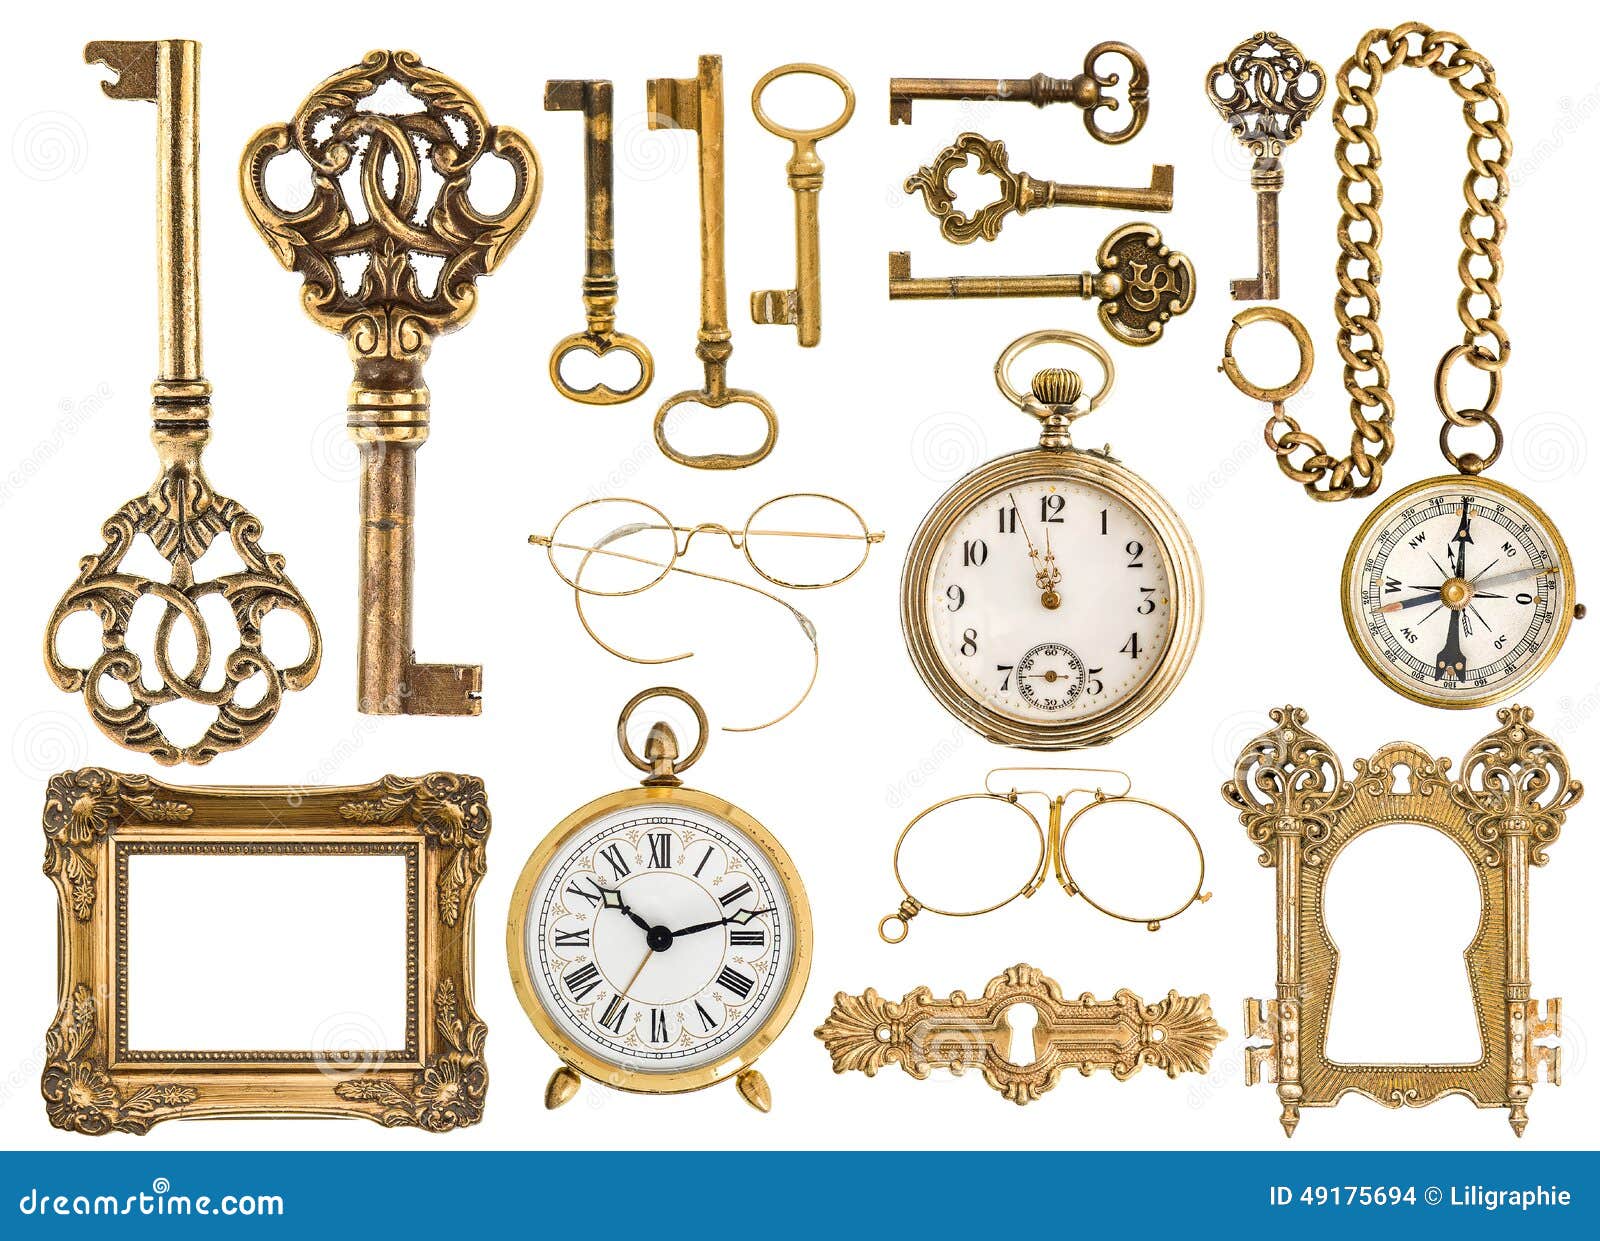 golden antique accessories. baroque frame, vintage keys, clock